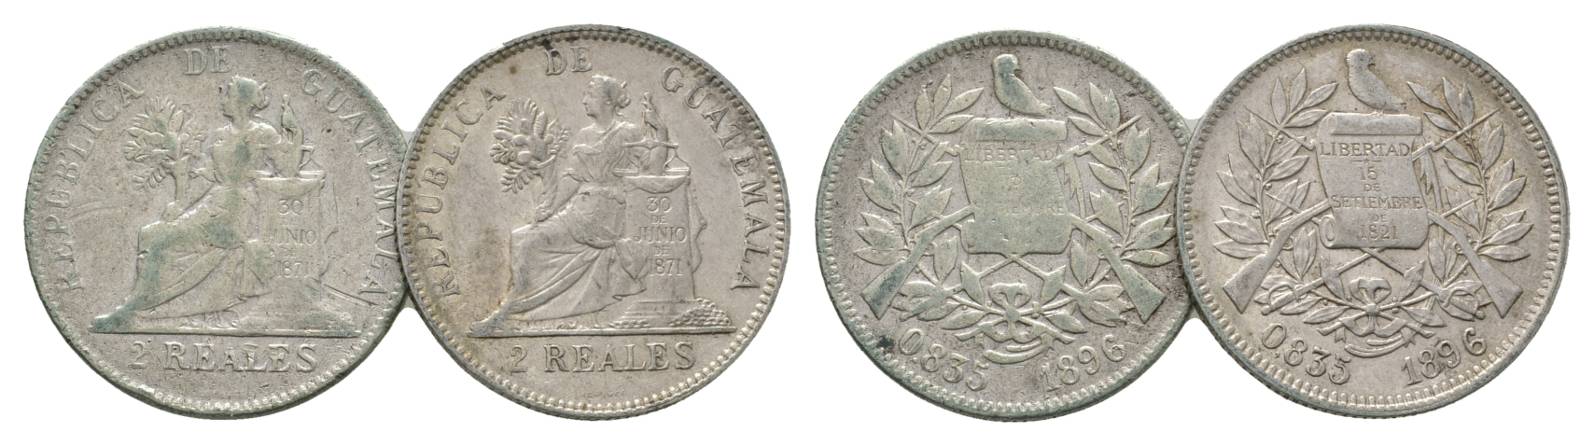  Guatemala, 2 Real 1896   